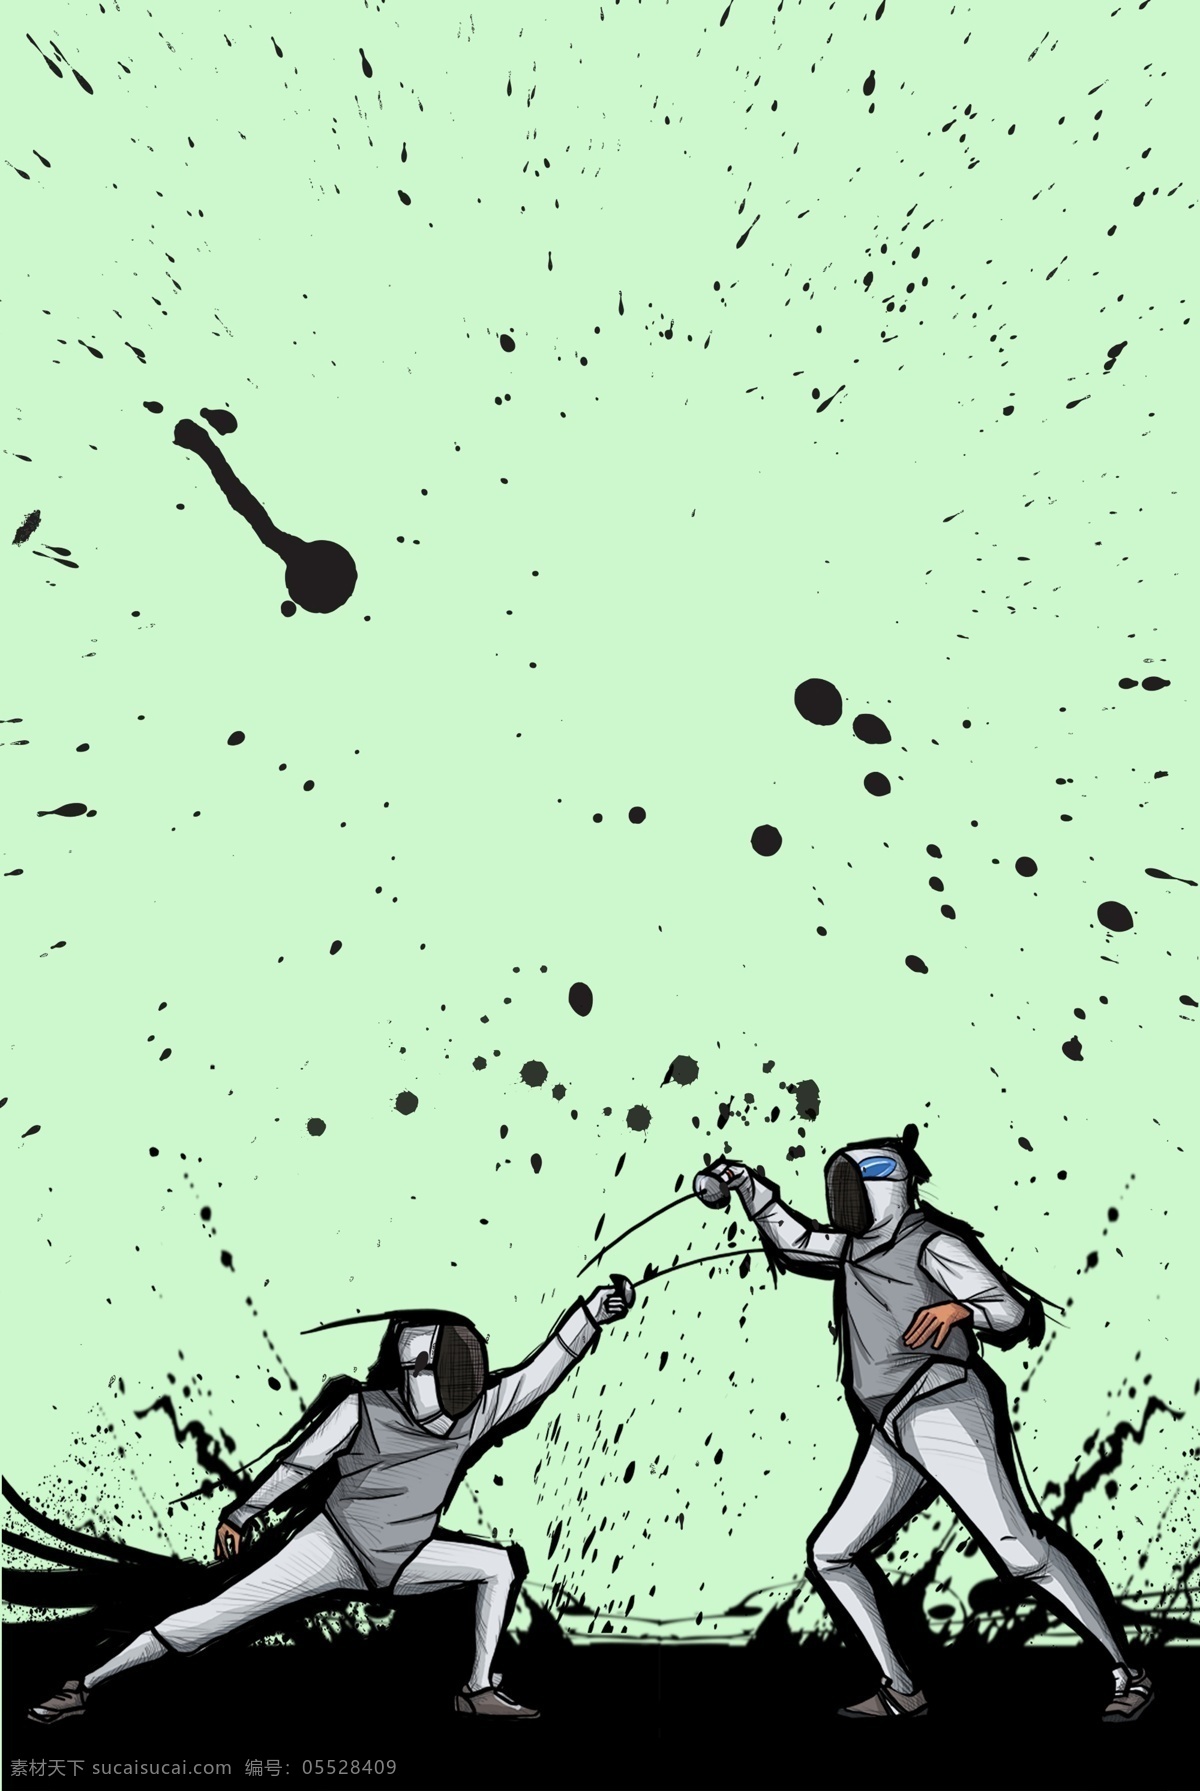 场 击剑 比赛 较量 手绘 泼墨 攻击 防御 飞舞墨迹 运动